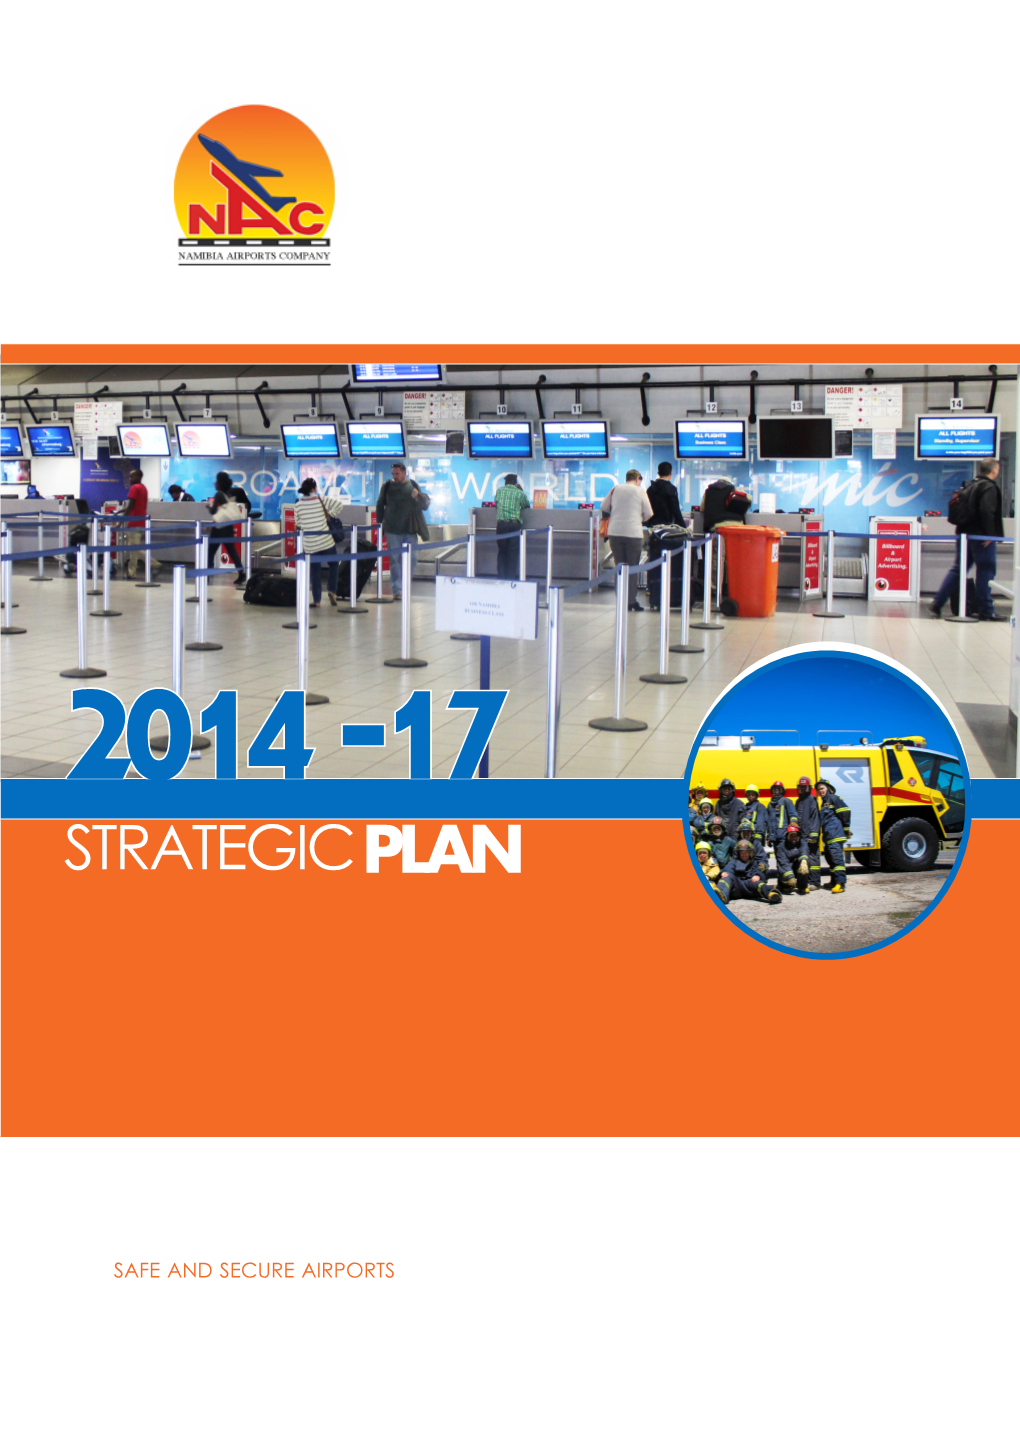 Strategic Plan for 2014-2017